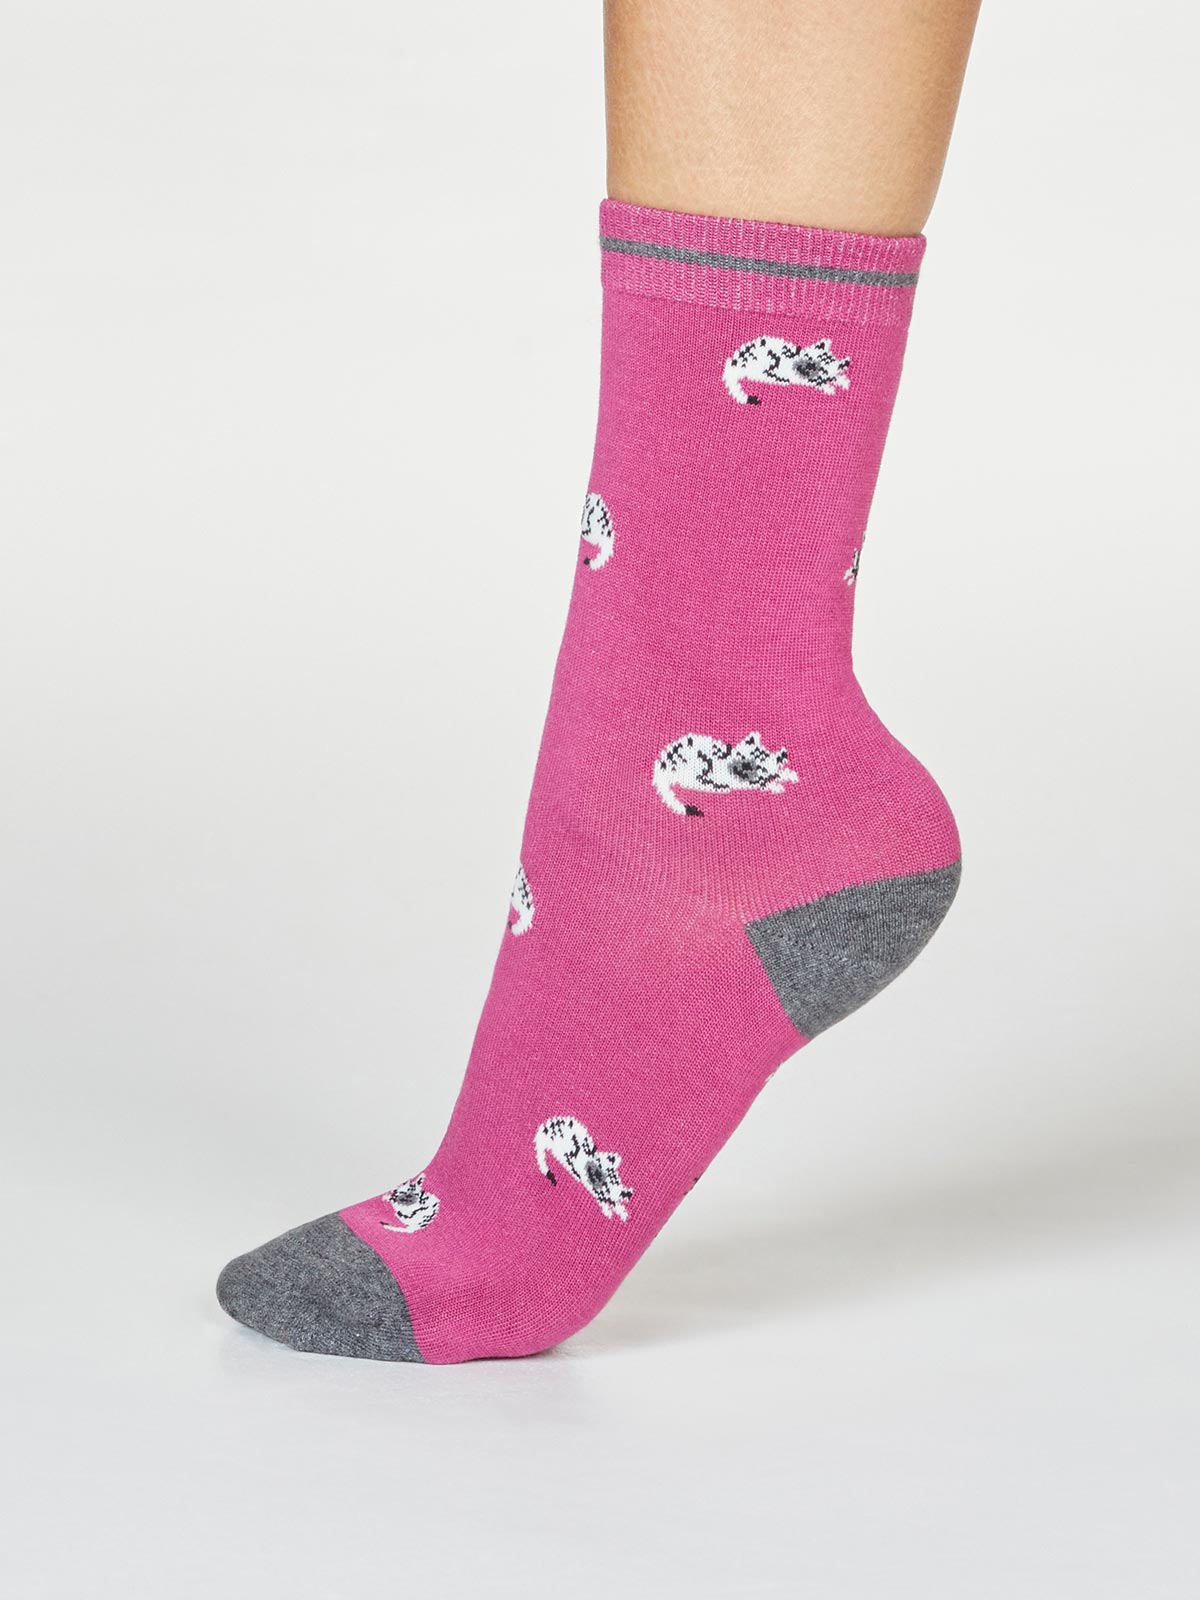 Penguin sock